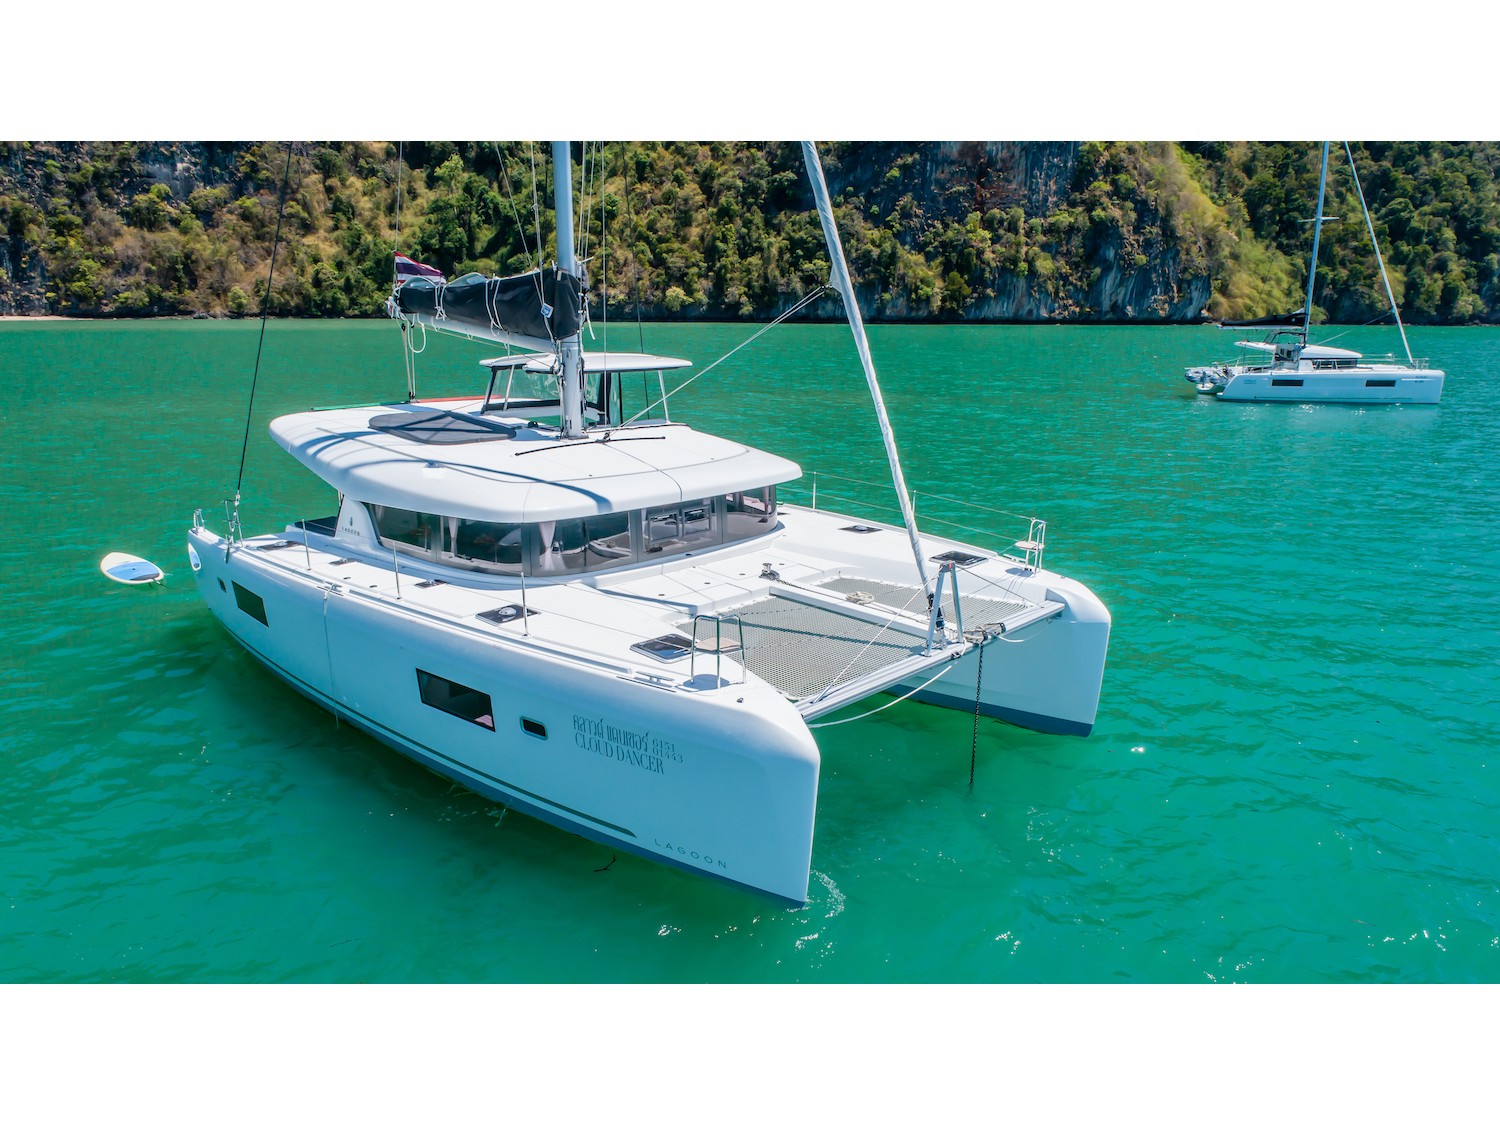 Lagoon 42 - Yacht Charter Phuket & Boat hire in Thailand Phuket Ao Po Grand Marina 2